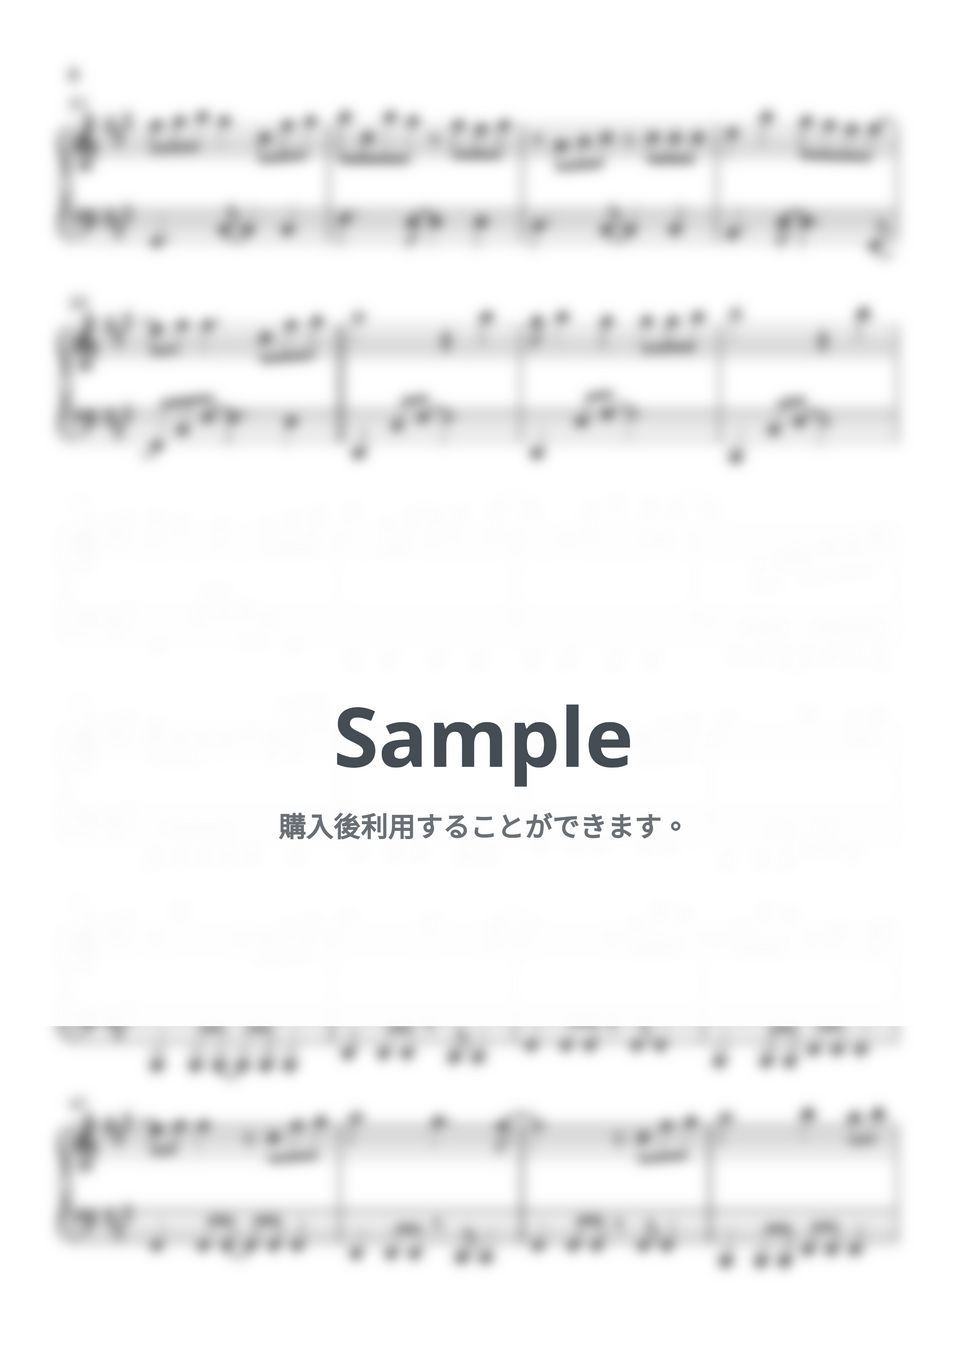 いきものがかかり - ブルーバード (ナルト(NARUTO)) by Piano Lovers. jp